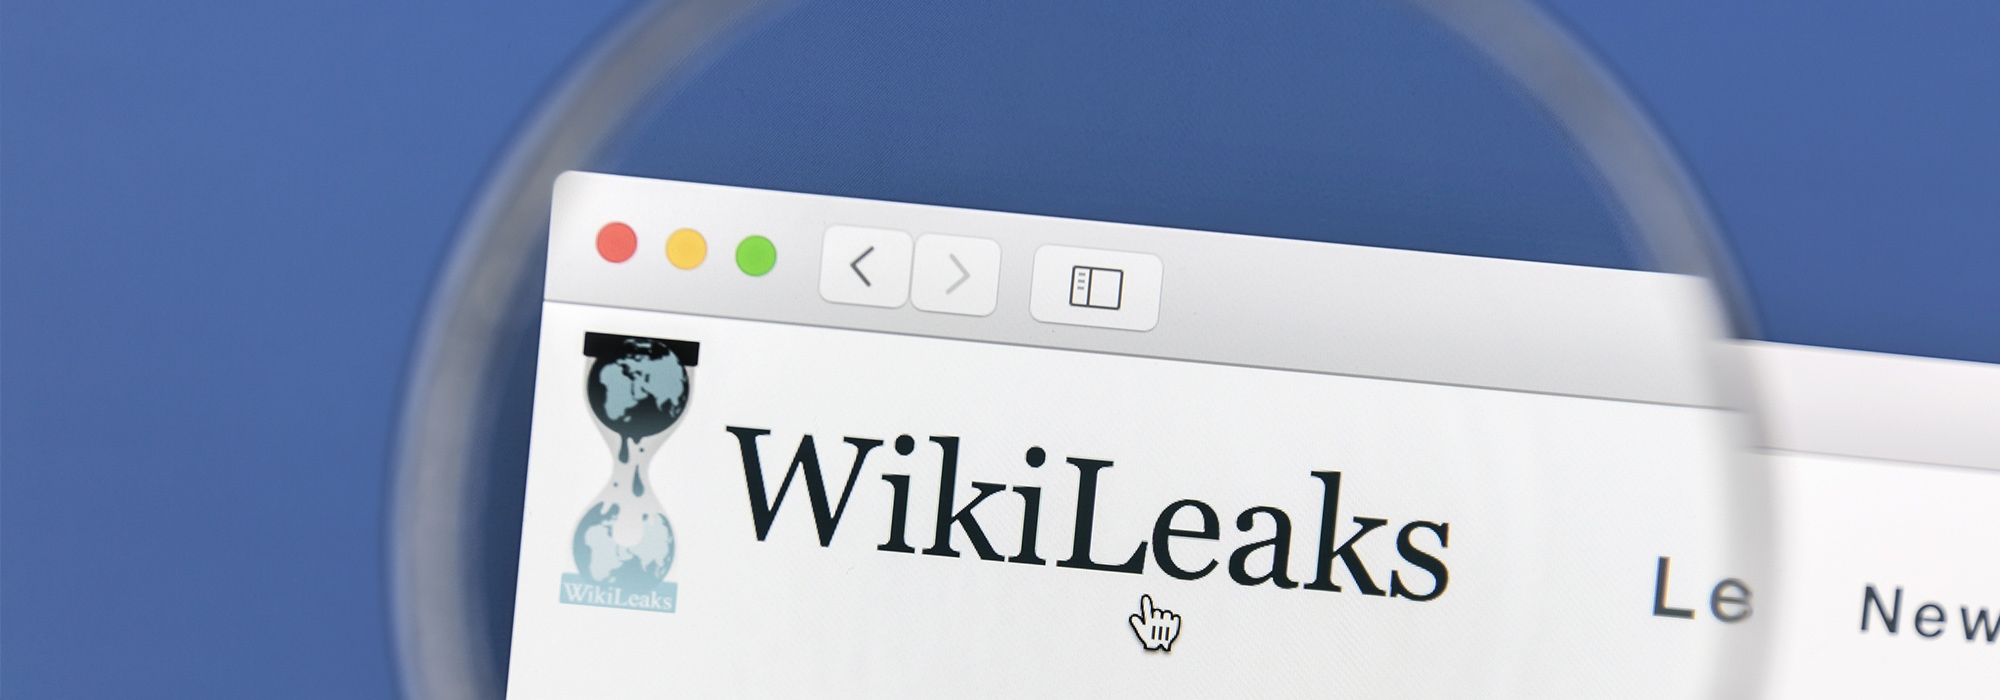 Prawda i konsekwencje: saga Wikileaks